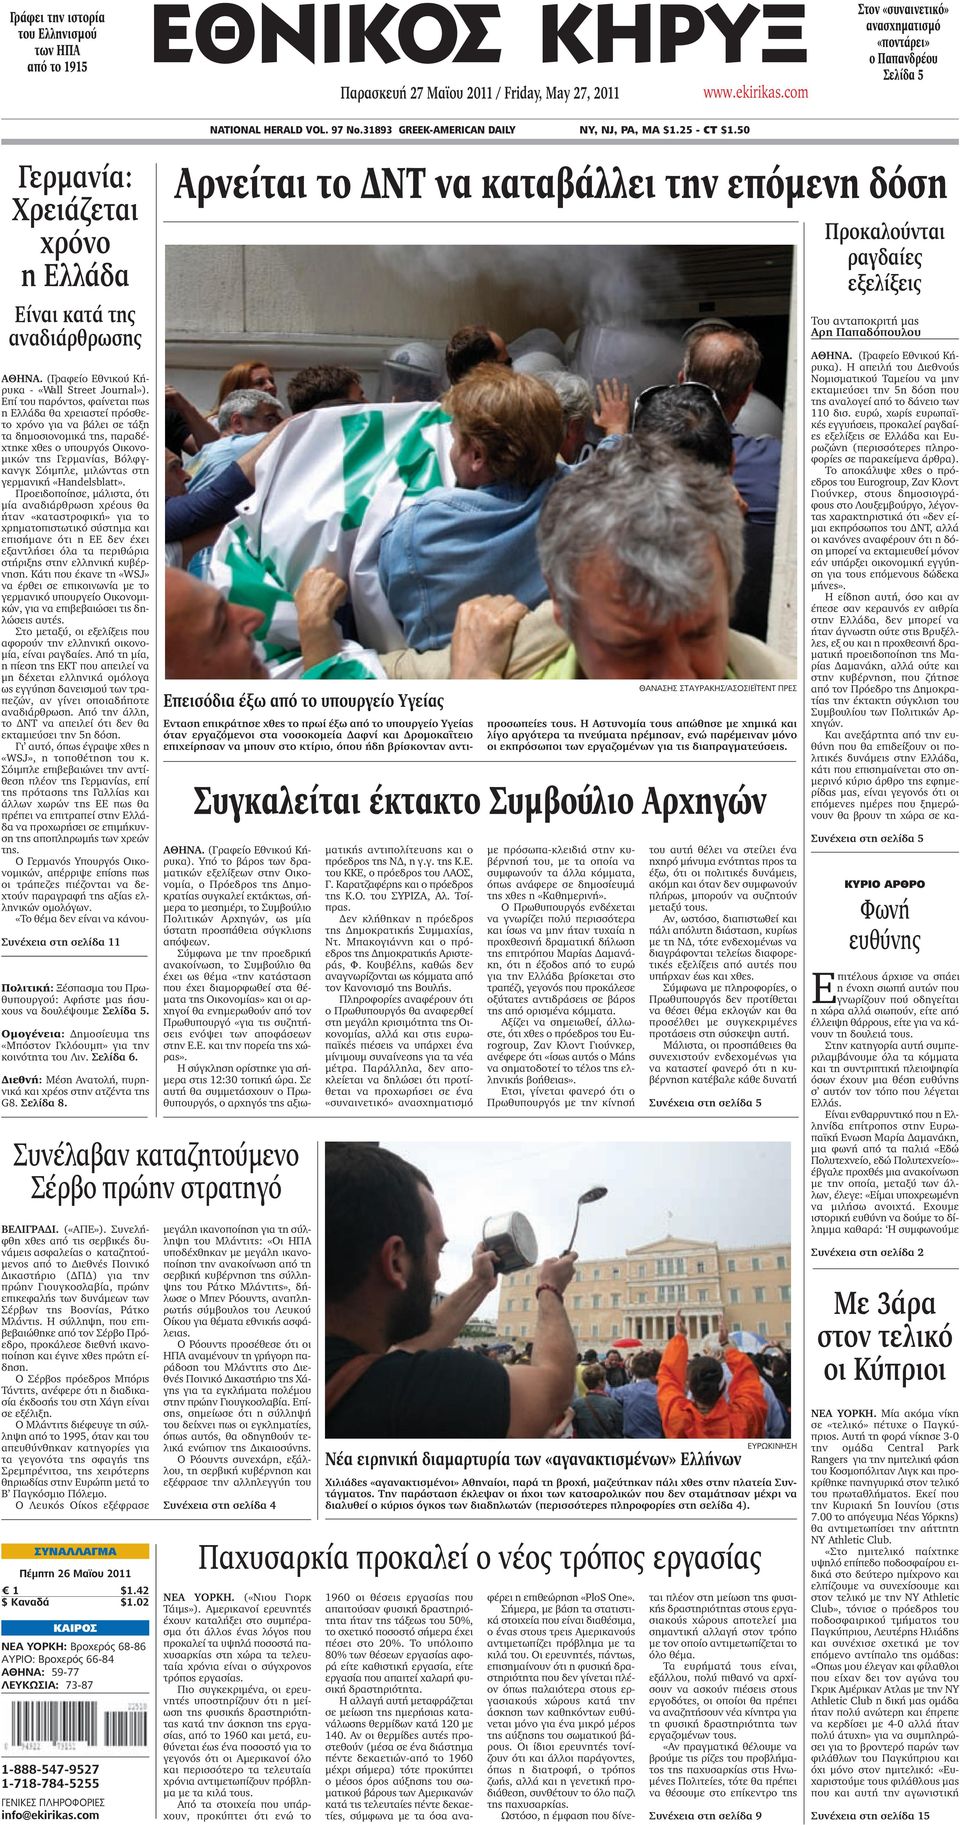 50 Γερμανία: Χρειάζεται χρόνο η Ελλάδα Είναι κατά της αναδιάρθρωσης ΑΘΗΝΑ. (Γραφείο Εθνικού Κήρυκα - «Wall Street Journal»).